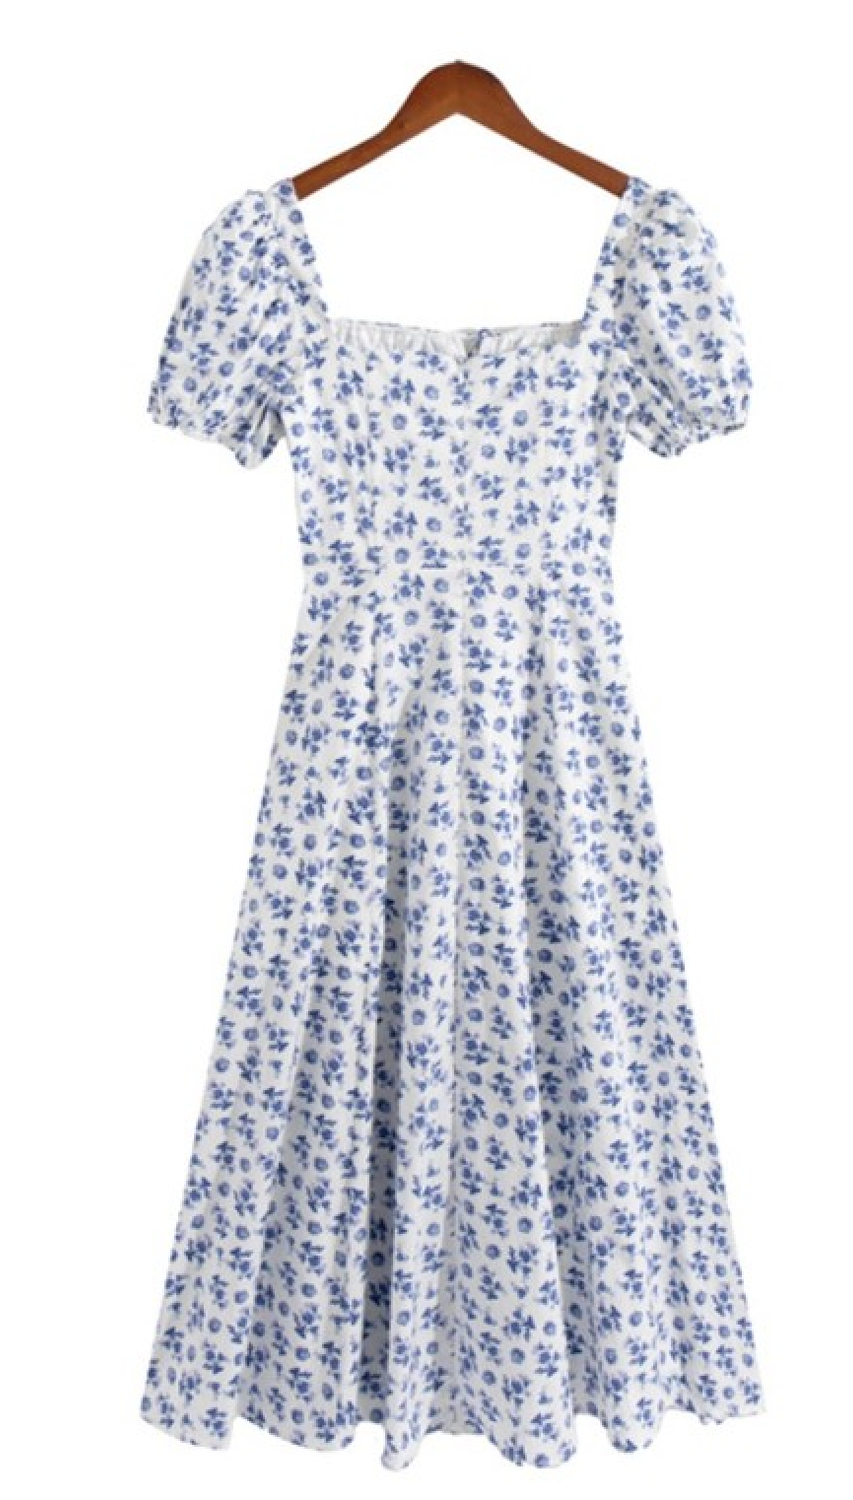 Sporades Blue Flower Dress, Choose Size: Small